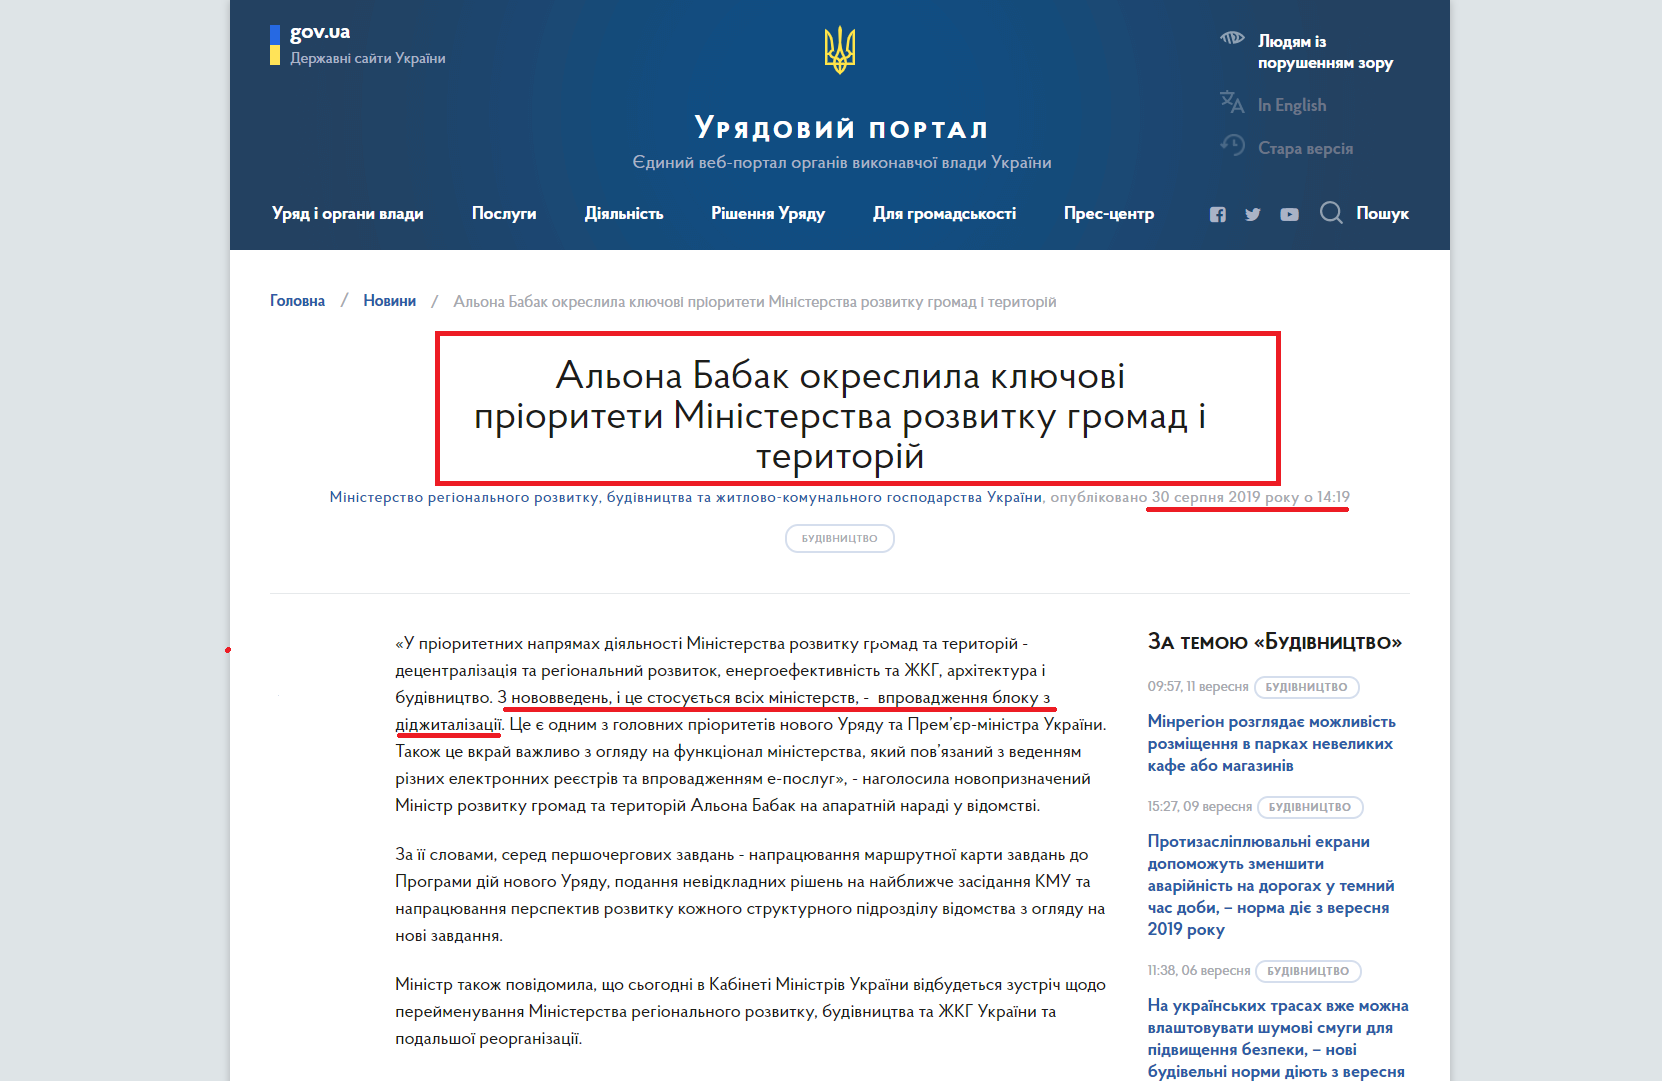 https://www.kmu.gov.ua/ua/news/alona-babak-okreslila-klyuchovi-prioriteti-ministerstva-rozvitku-gromad-i-teritorij